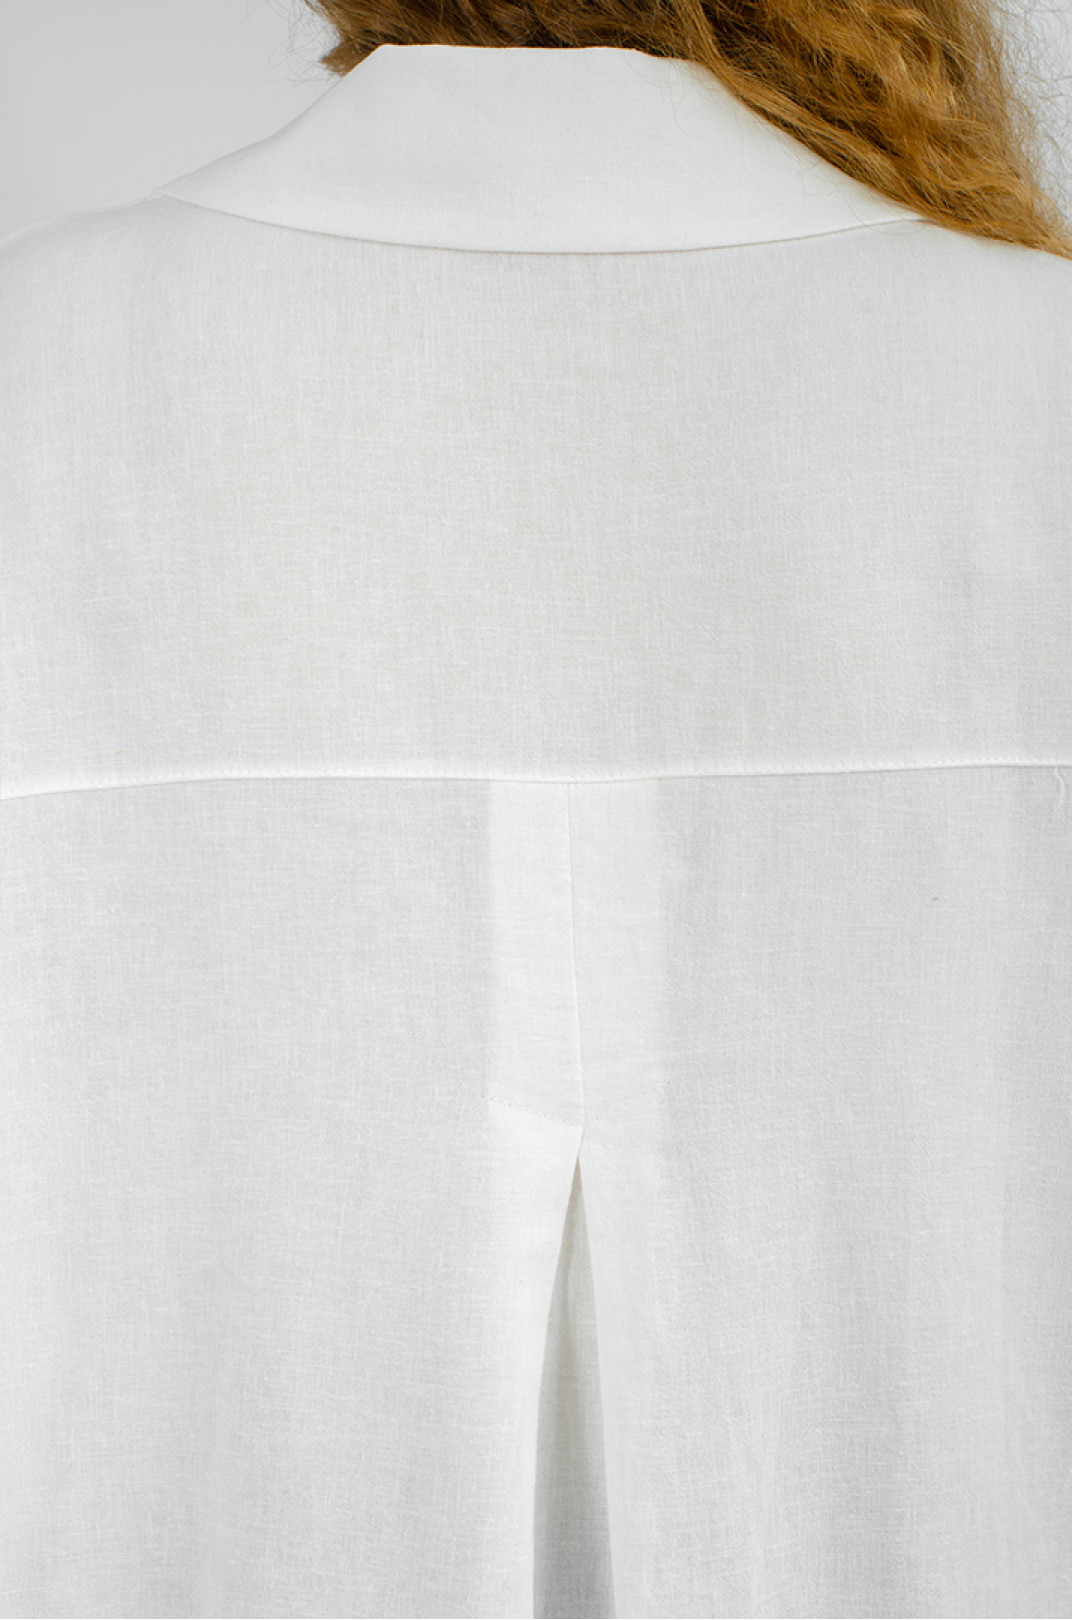 Блуза льняная с украшением больших размеров